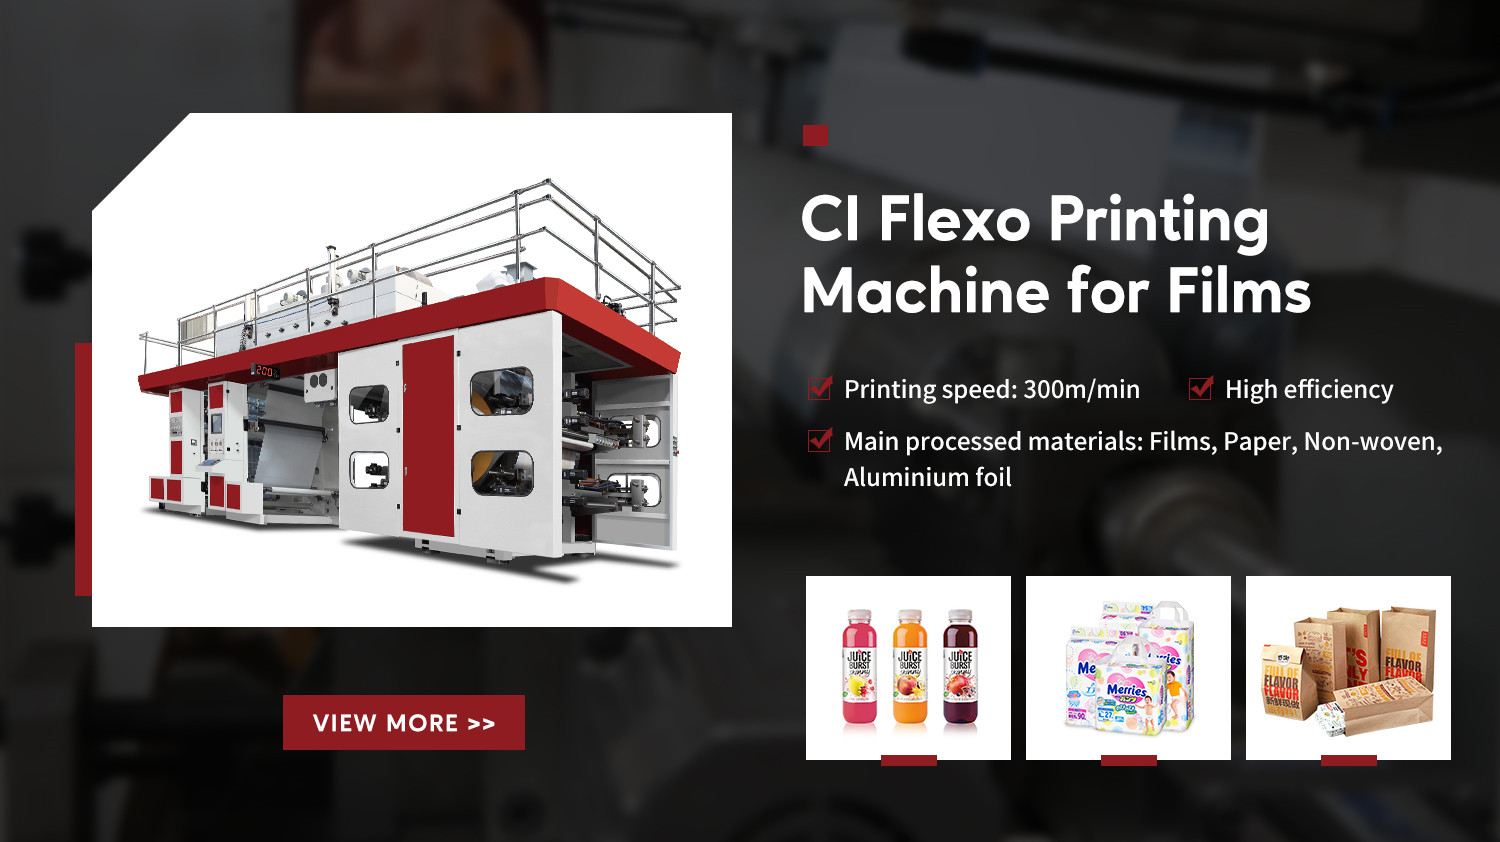 Product advantages of CI flexo machine